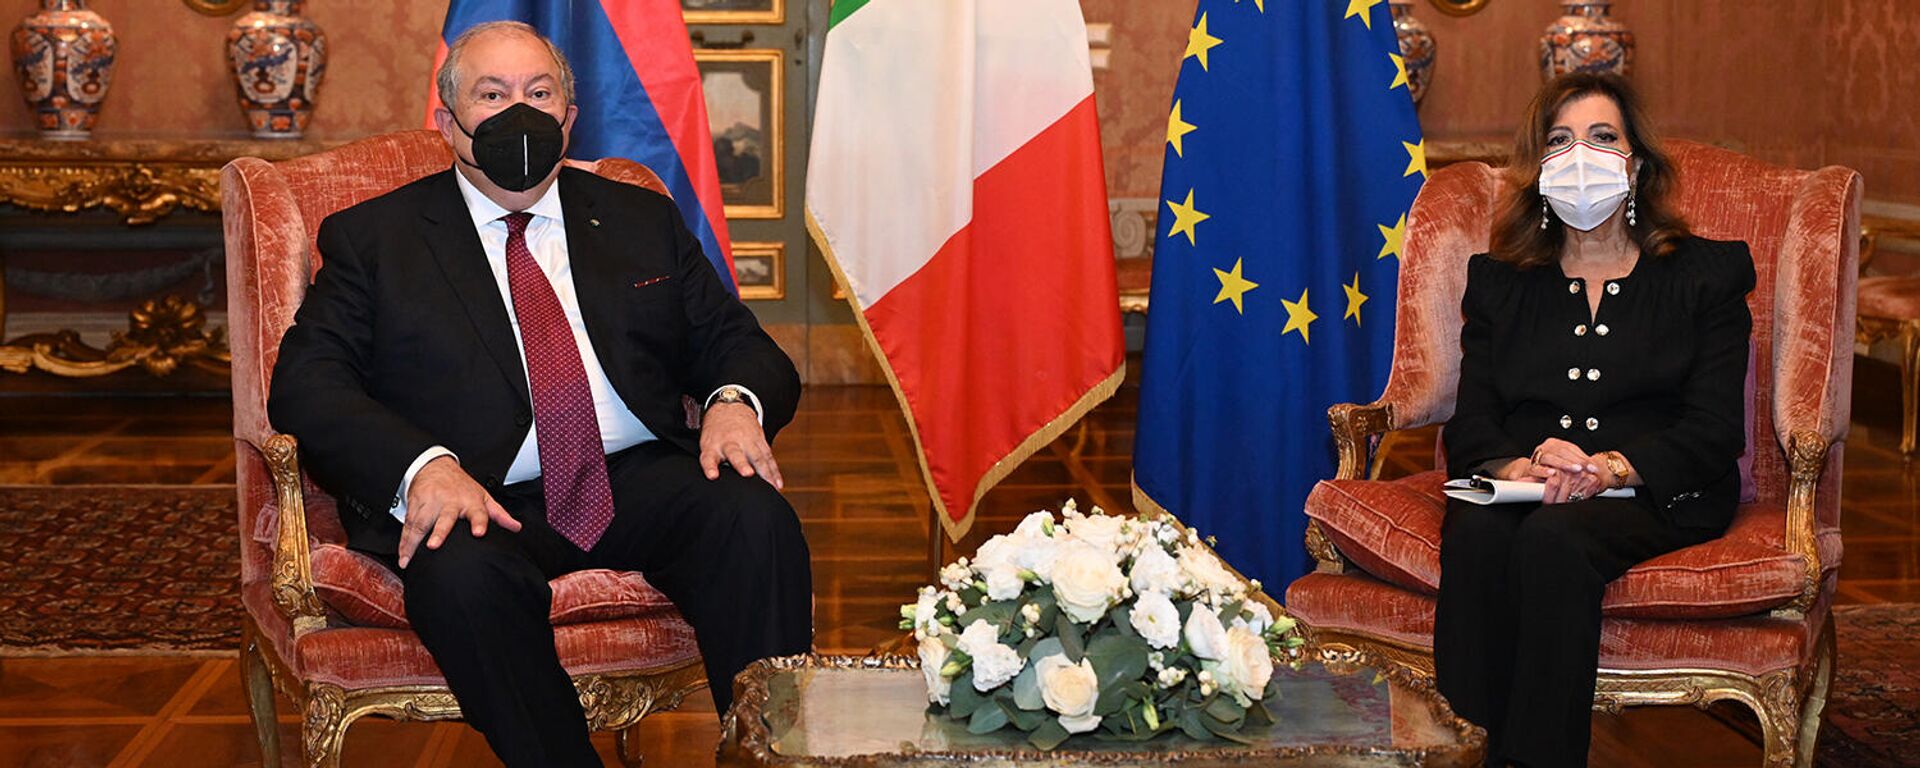 ՀՀ նախագահ Արմեն Սարգսյանը հանդիպել է Իտալիայի Սենատի նախագահ Մարիա Էլիզաբետա Կազելատիի հետ - Sputnik Արմենիա, 1920, 06.10.2021